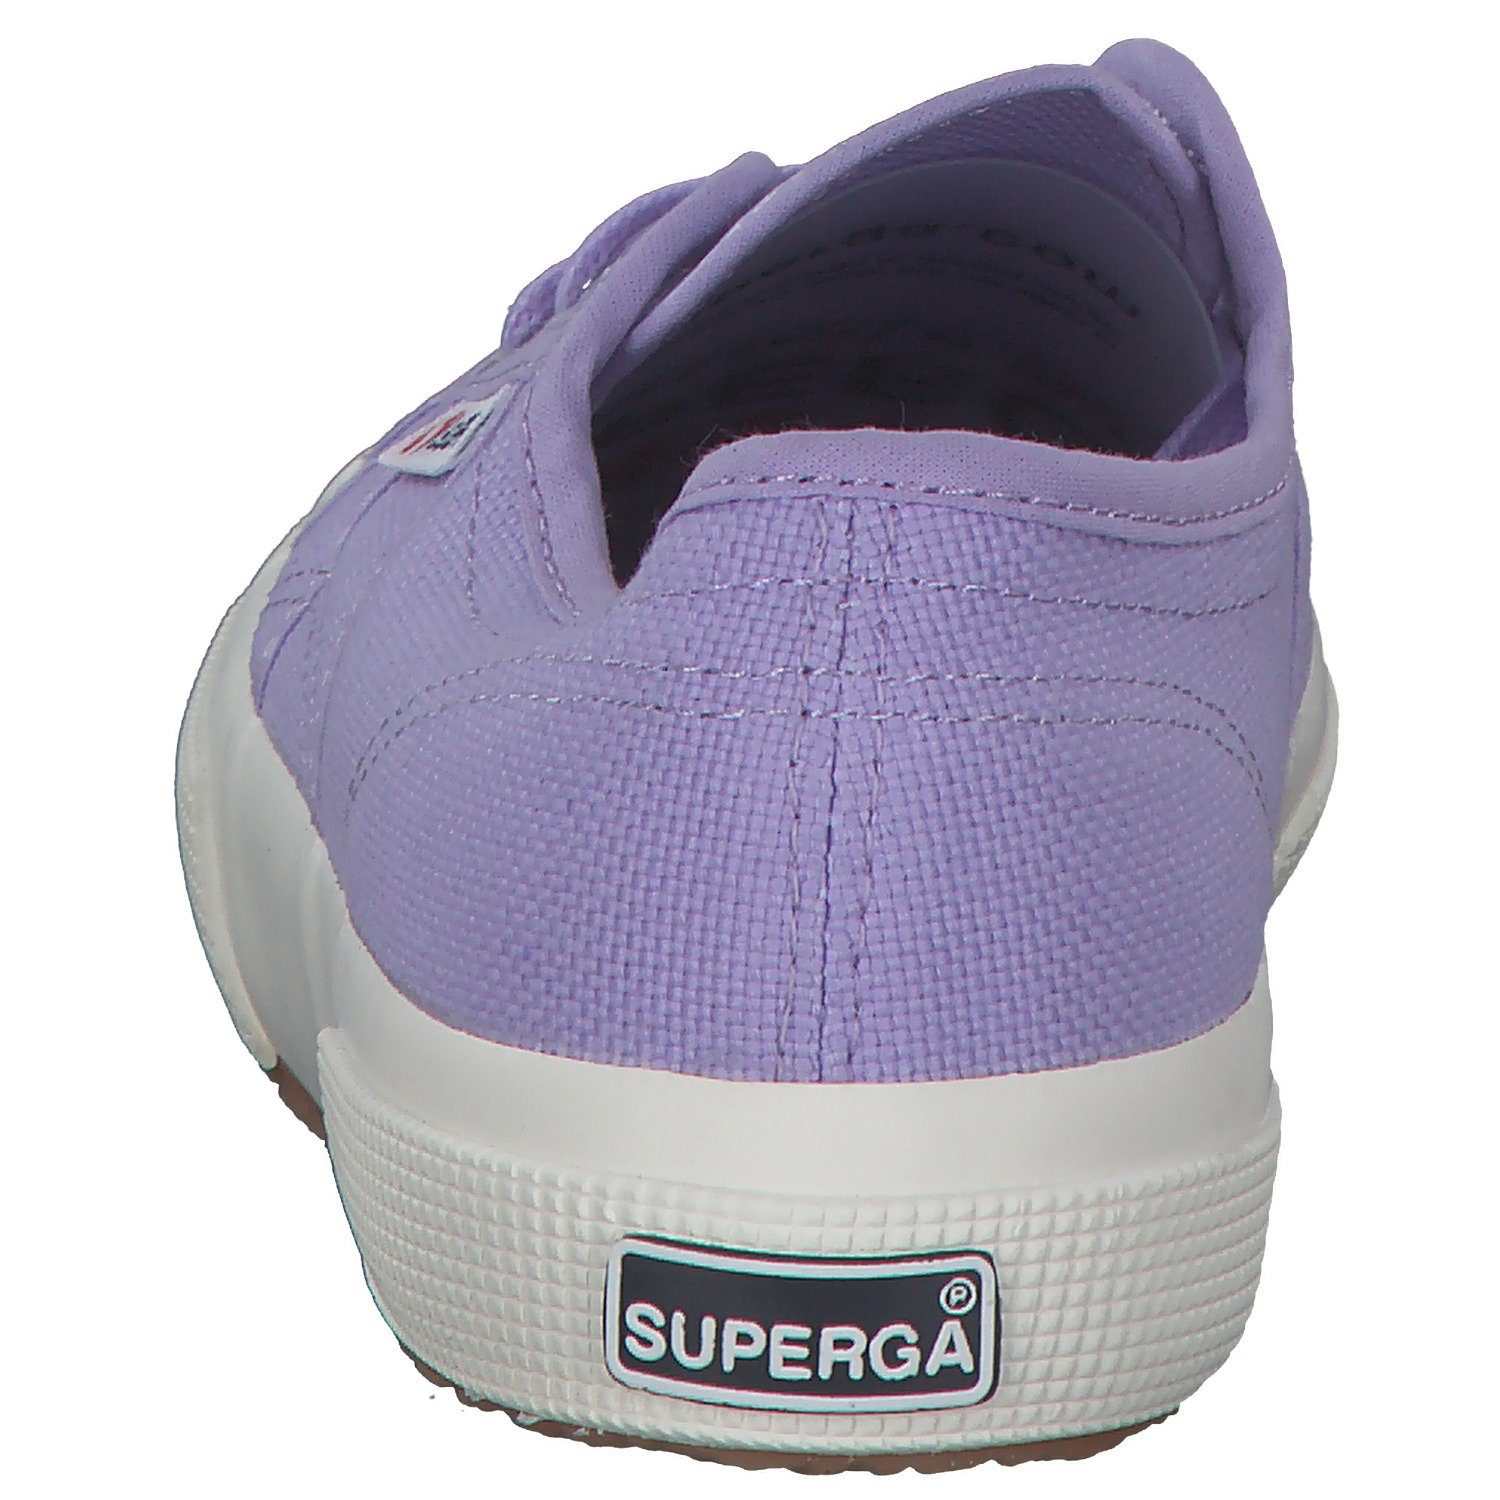 Superga Superga 2750 Cotu Classic S000010 Sneaker